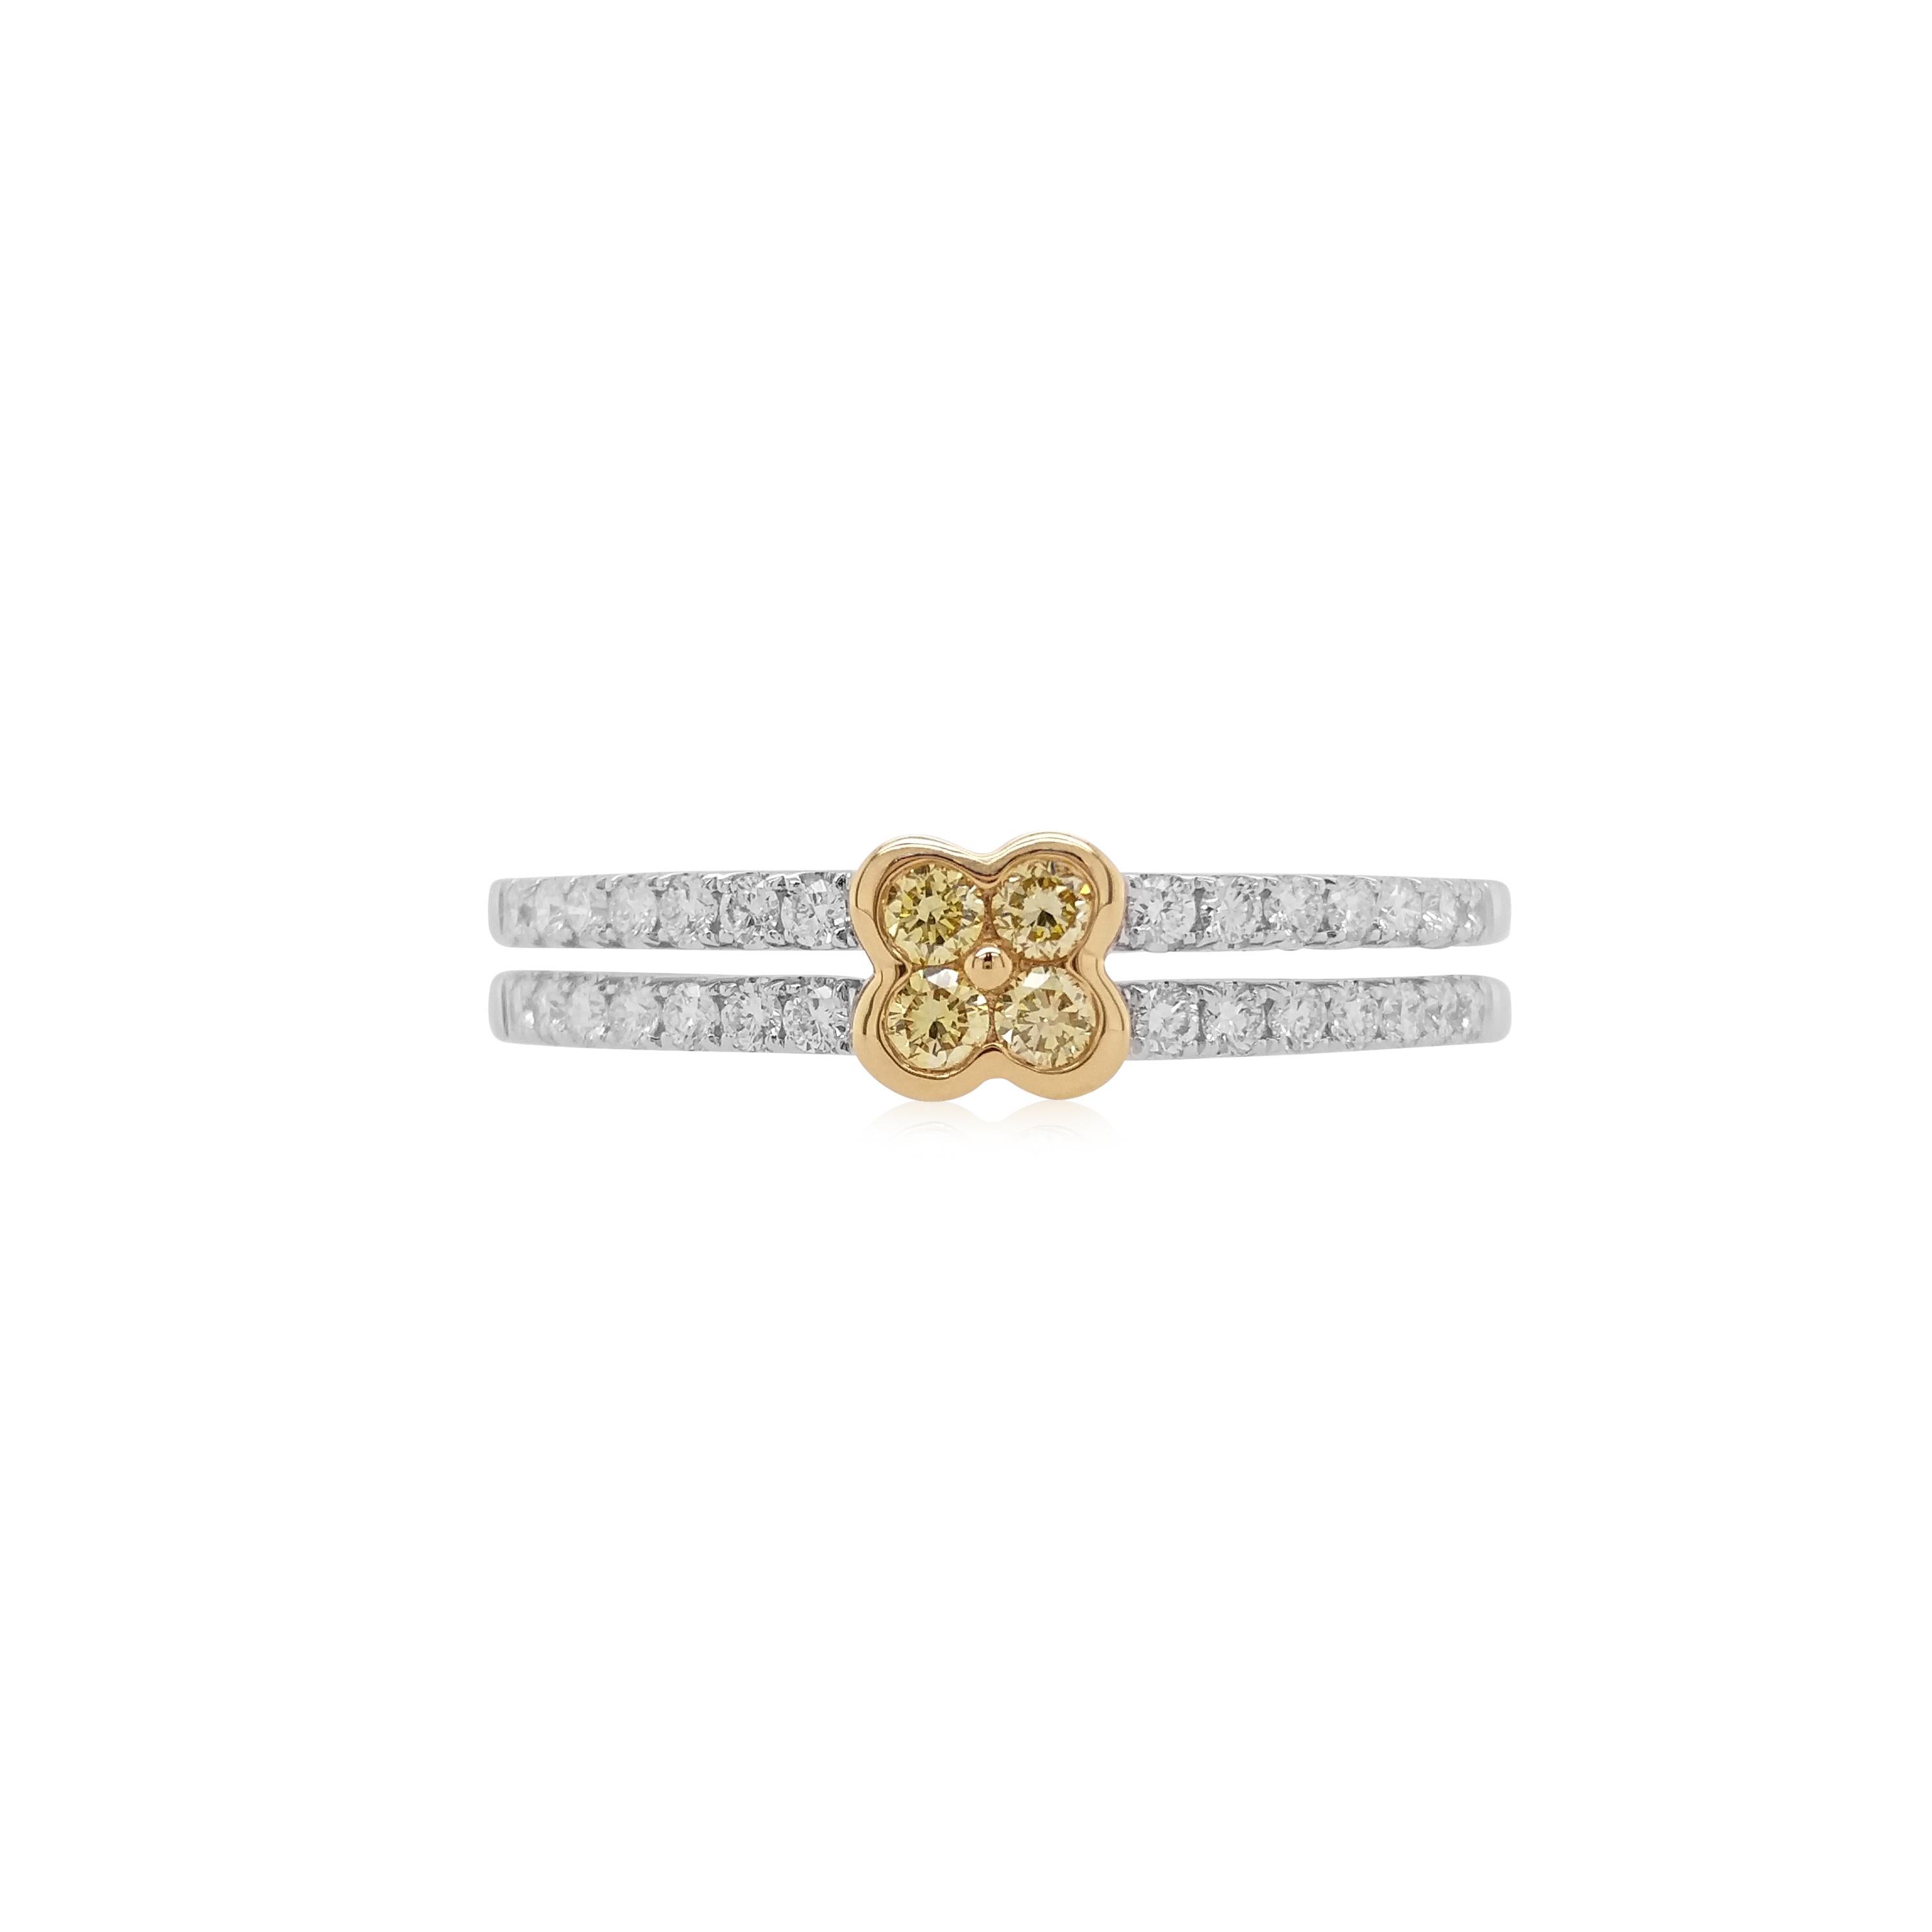 Ein eleganter Ring mit runden gelben Diamanten im Brillantschliff, gefasst in einem Doppelring aus 18 Karat Gold mit weißen Diamanten. 

Gelbe Diamanten - 0,10 Karat
Weißer Diamant - 0,20 Karat

HYT Jewelry ist ein Unternehmen in Privatbesitz mit